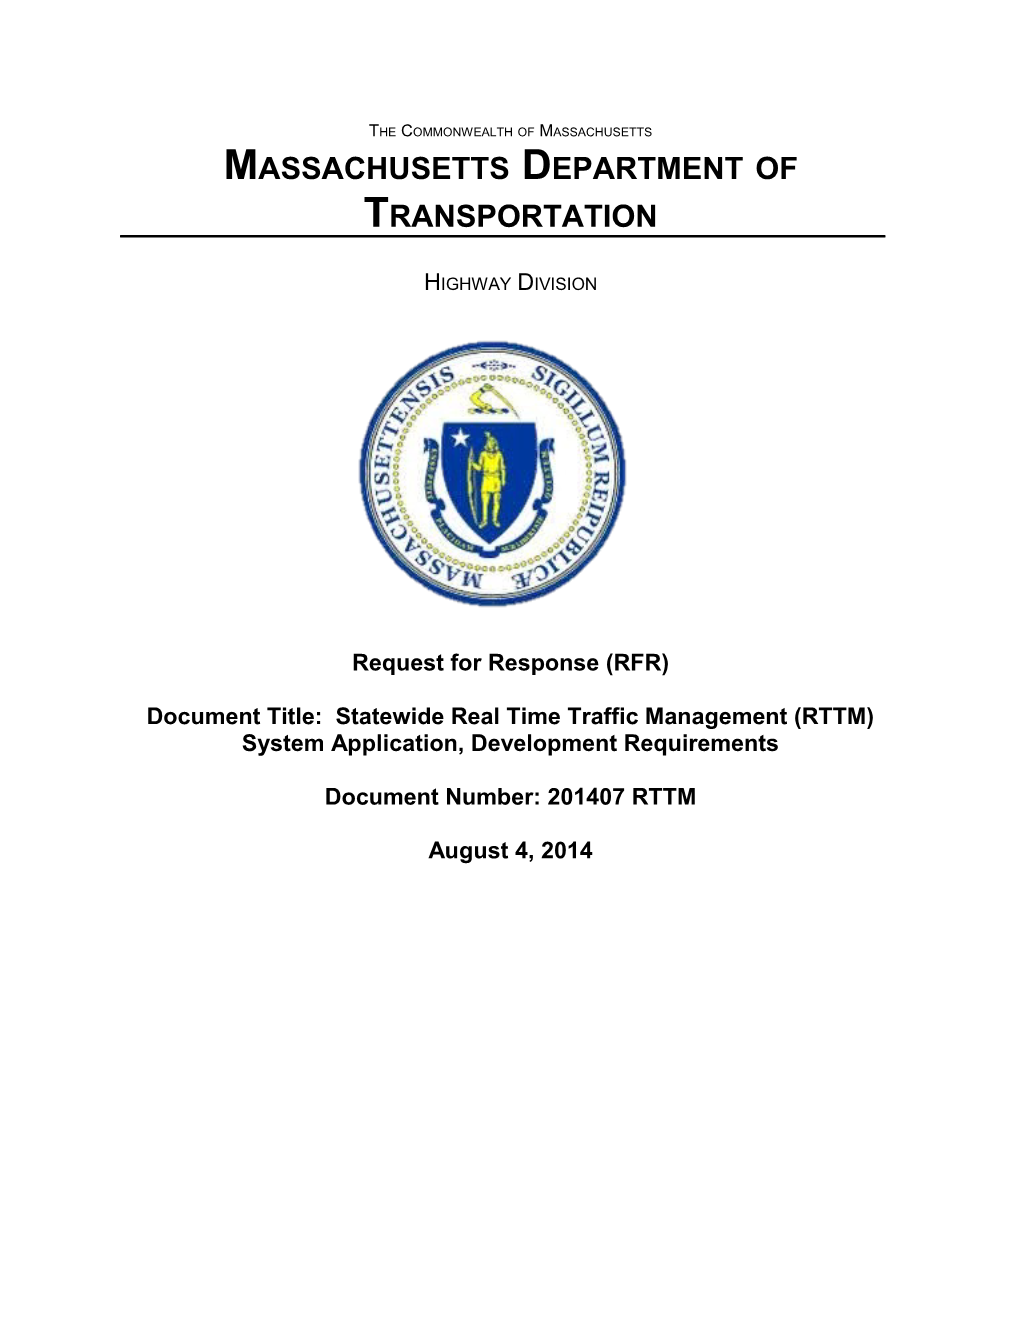 Massachusetts Department of Transportation